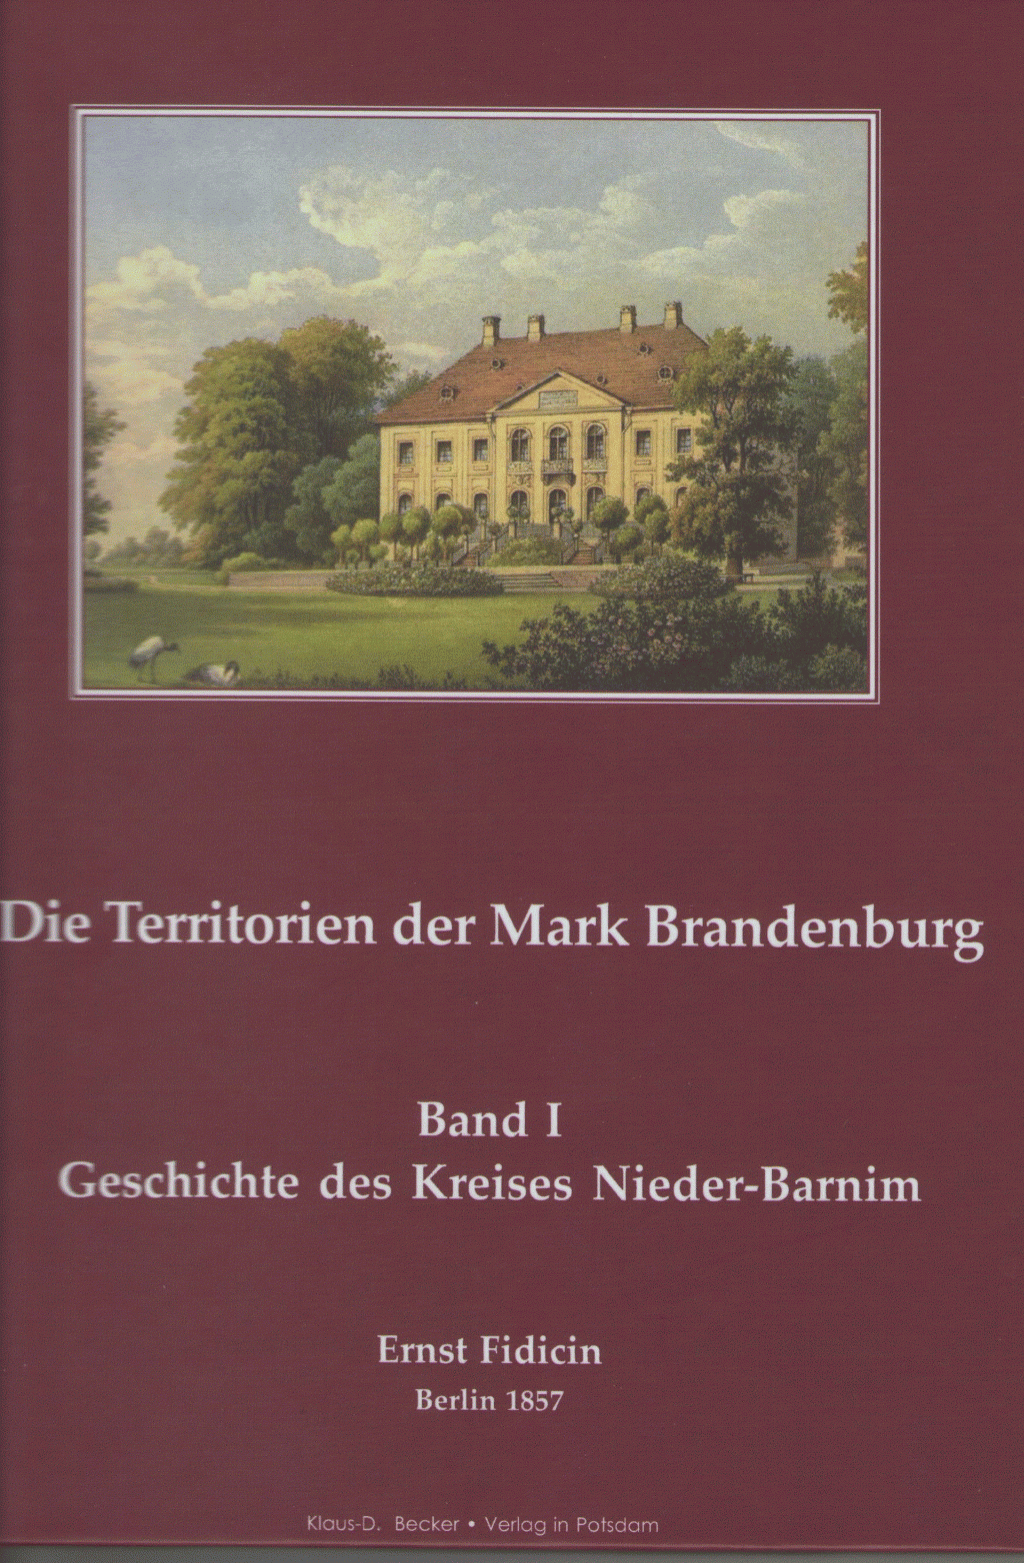 Geschichte des Kreises Nieder-Barnim